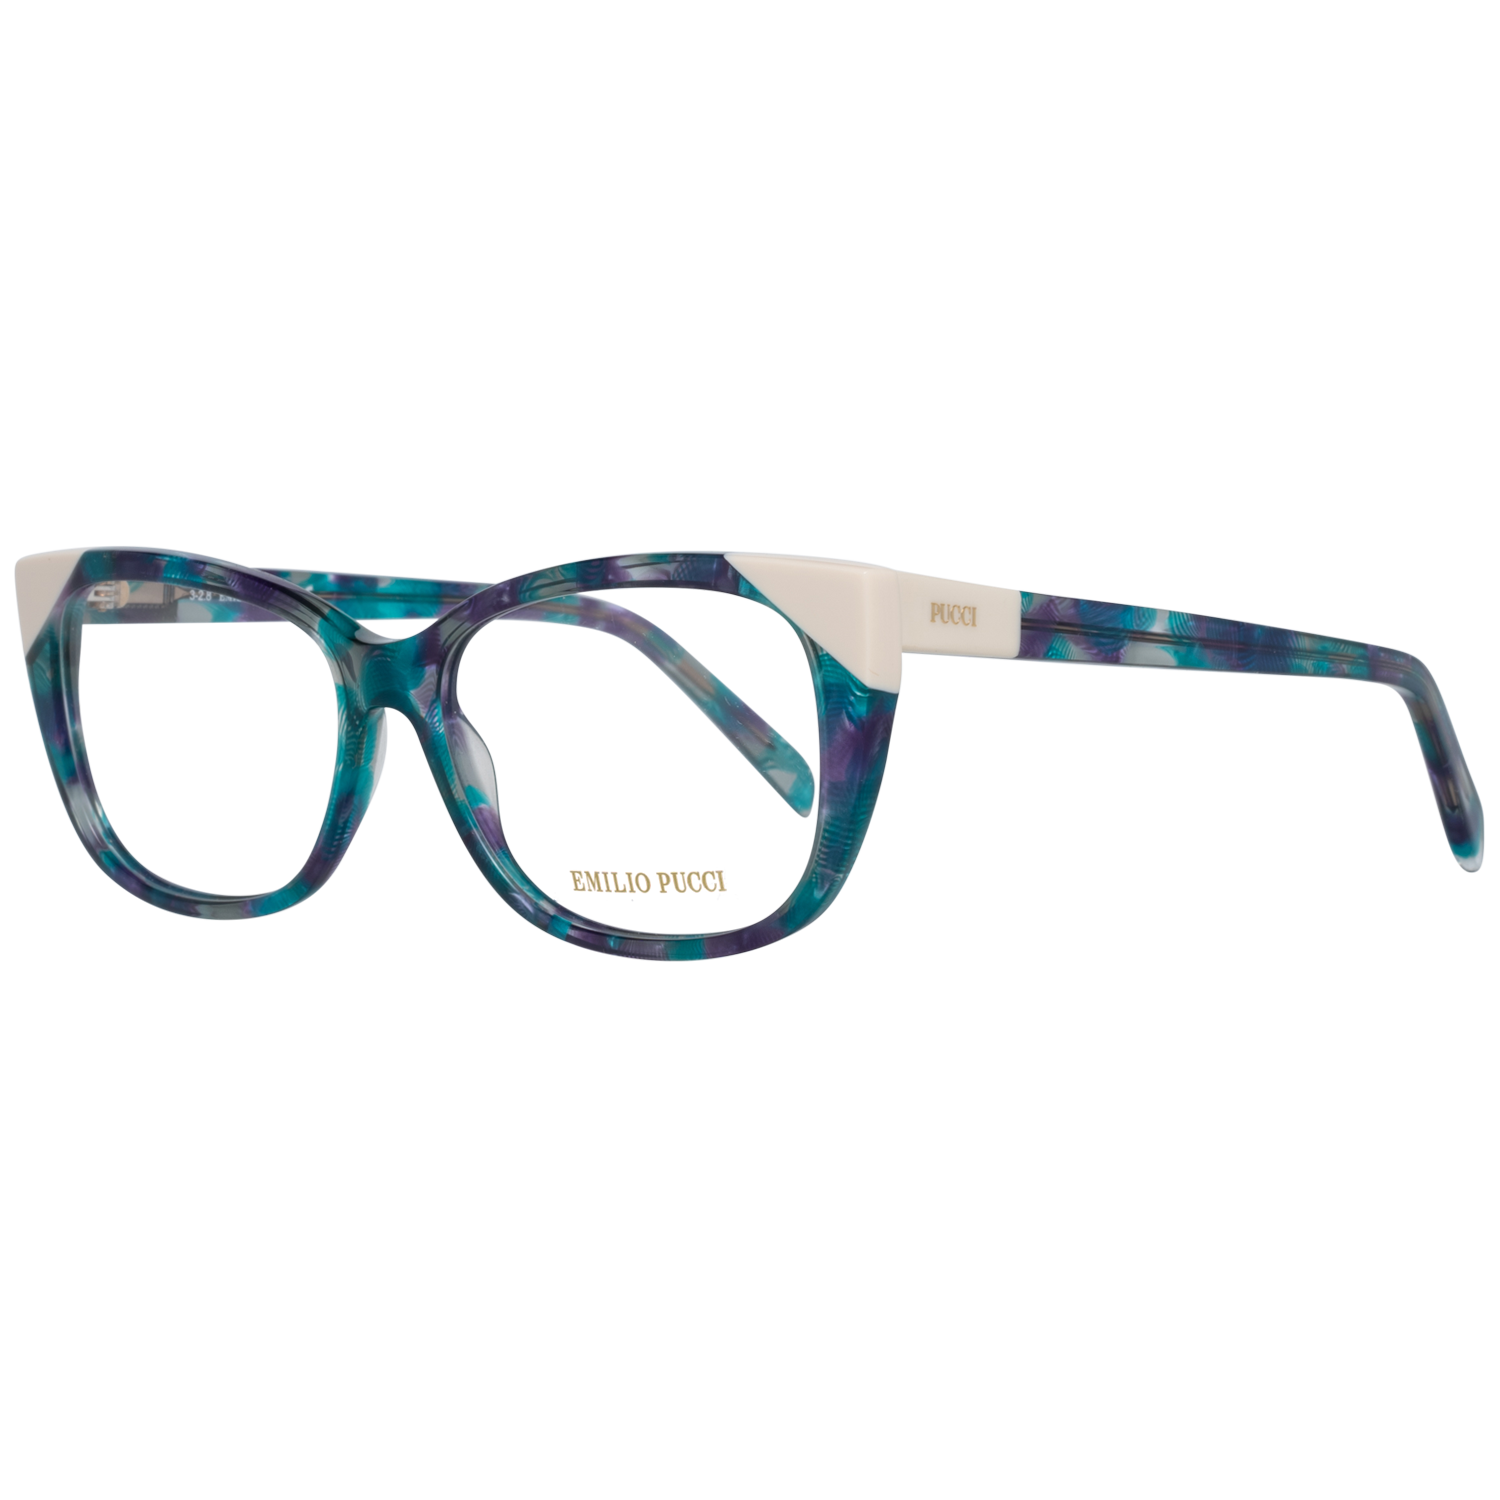 Emilio Pucci Frames Emilio Pucci Optical Frame EP5117 092 54 Eyeglasses Eyewear UK USA Australia 